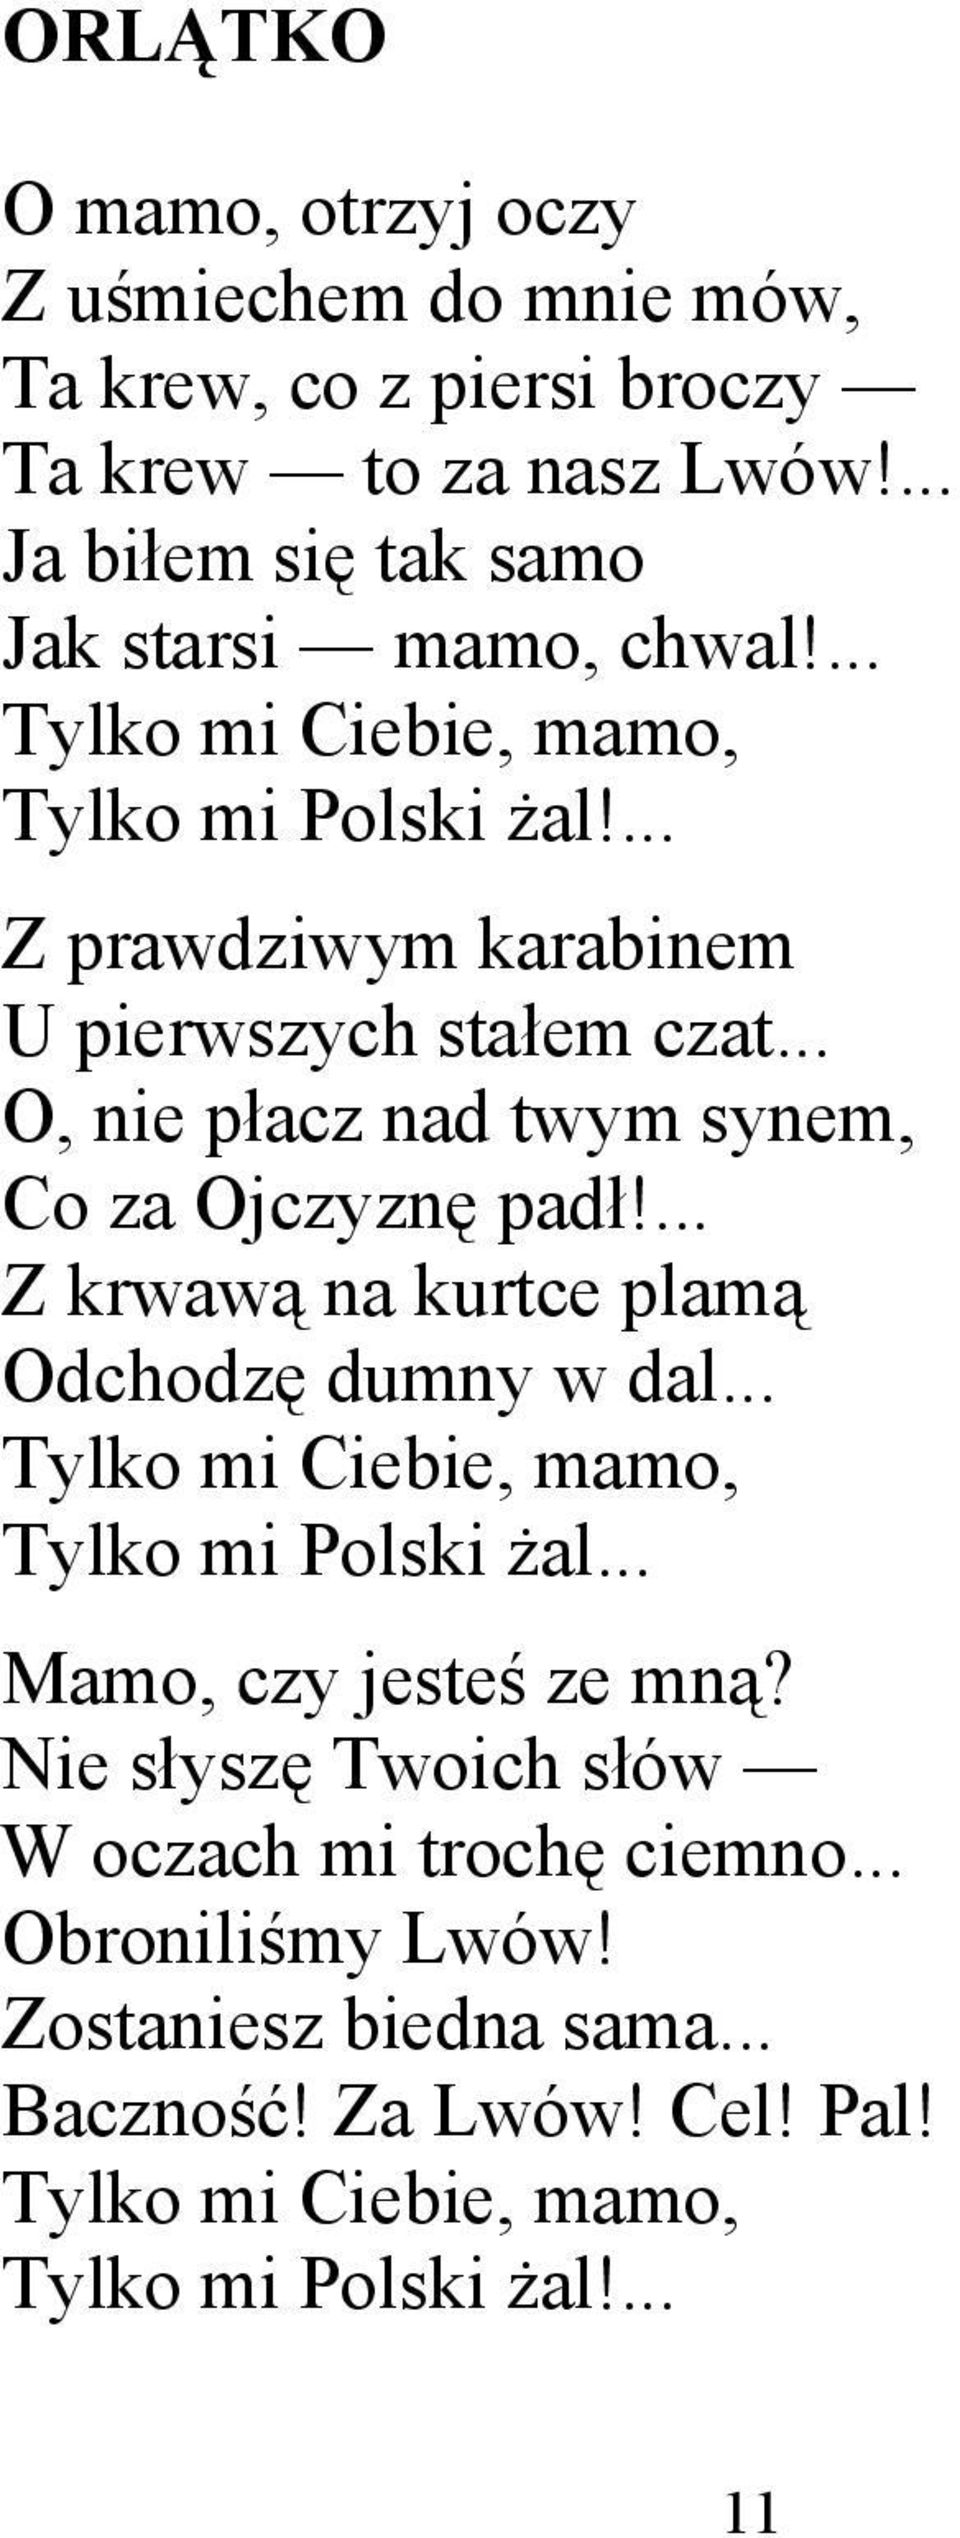 ... Z krwawą na kurtce plamą Odchodzę dumny w dal... Tylko mi Ciebie, mamo, Tylko mi Polski żal... Mamo, czy jesteś ze mną?